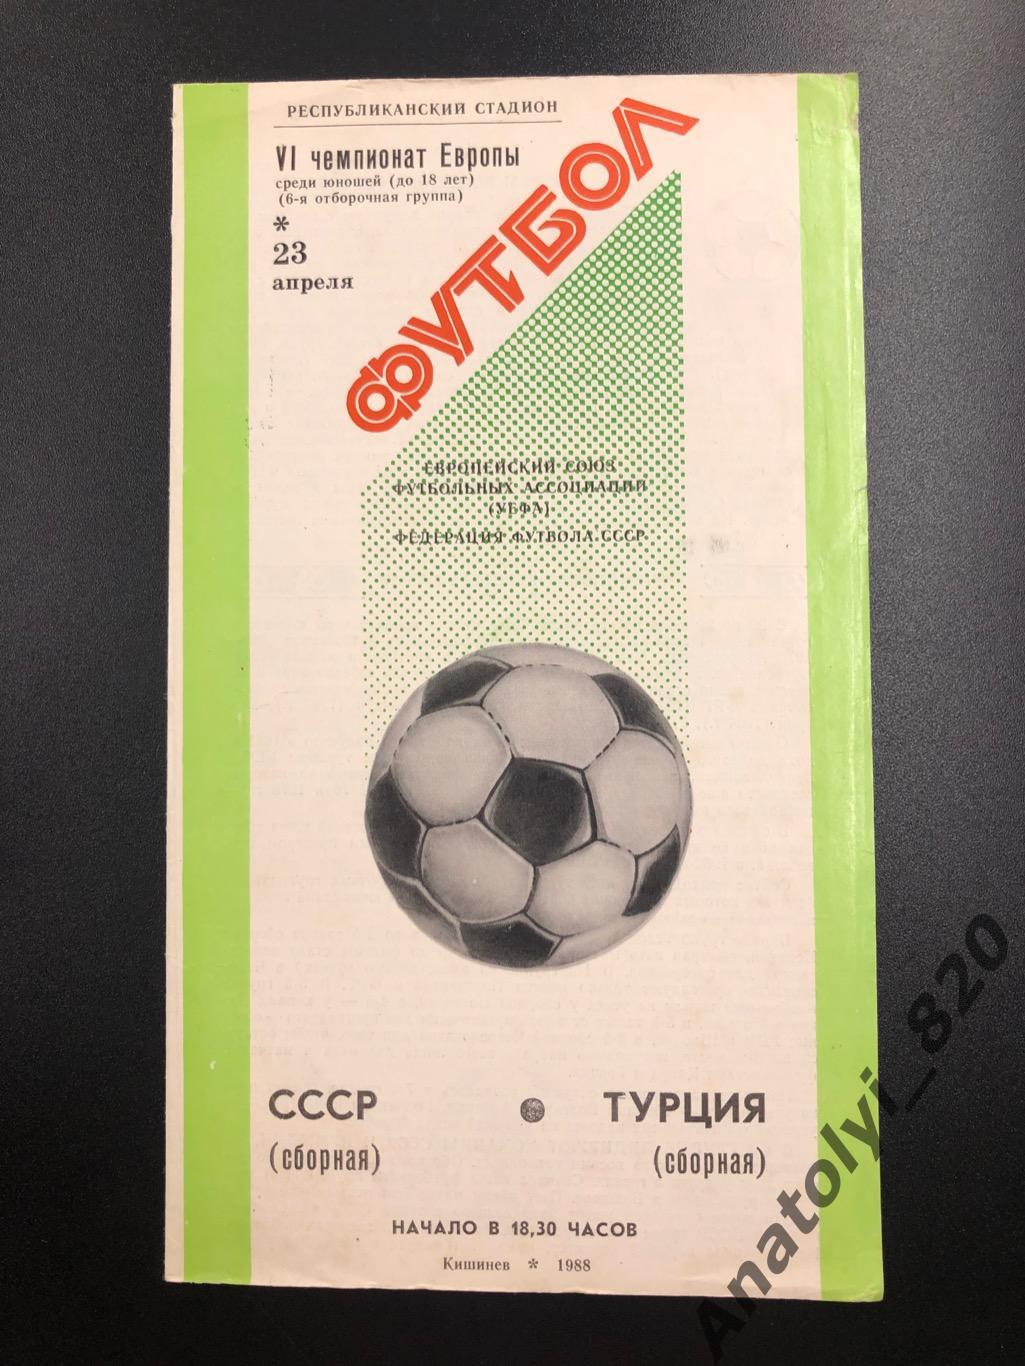 Сборная СССР - сборная Турция, 23.04.1988, юноши